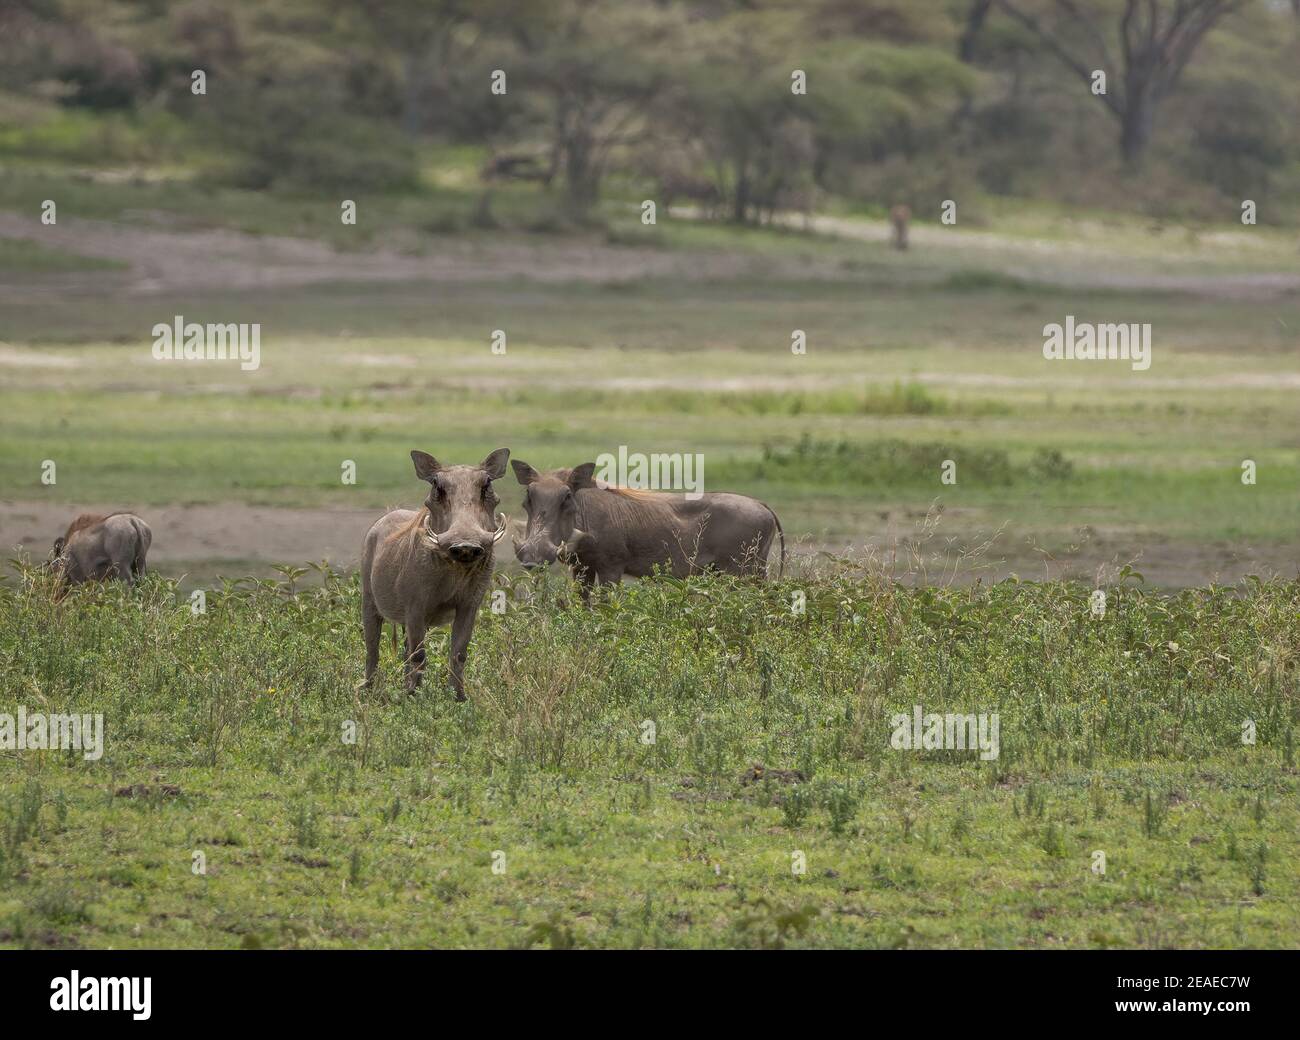 Warzenschweine in der Grünlandsavanne Afrikas. Stockfoto